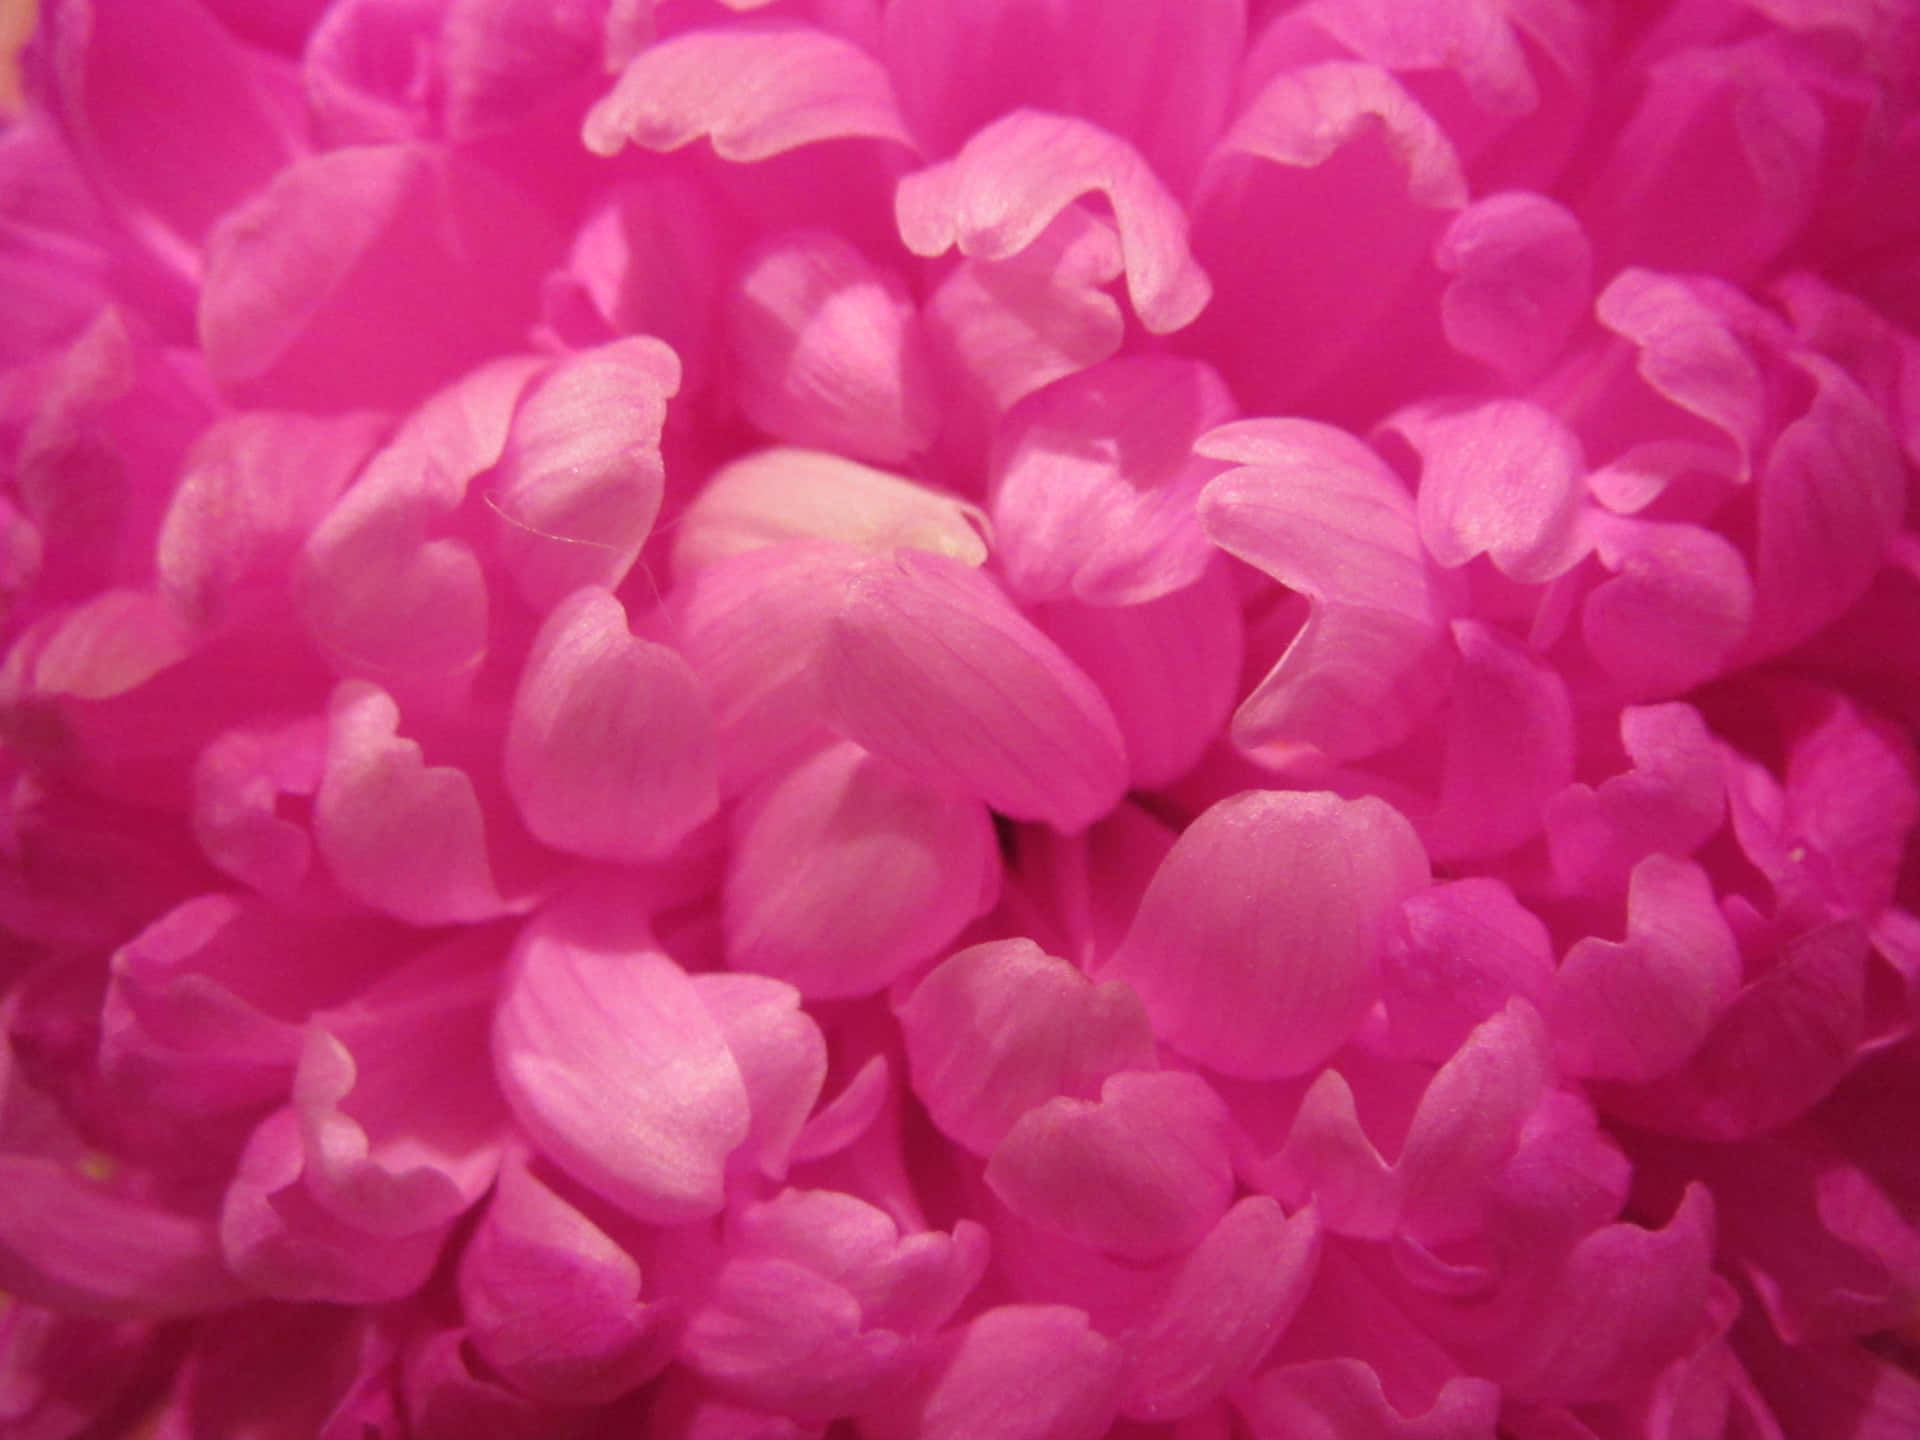 Etnærbillede Af En Pink Blomst.